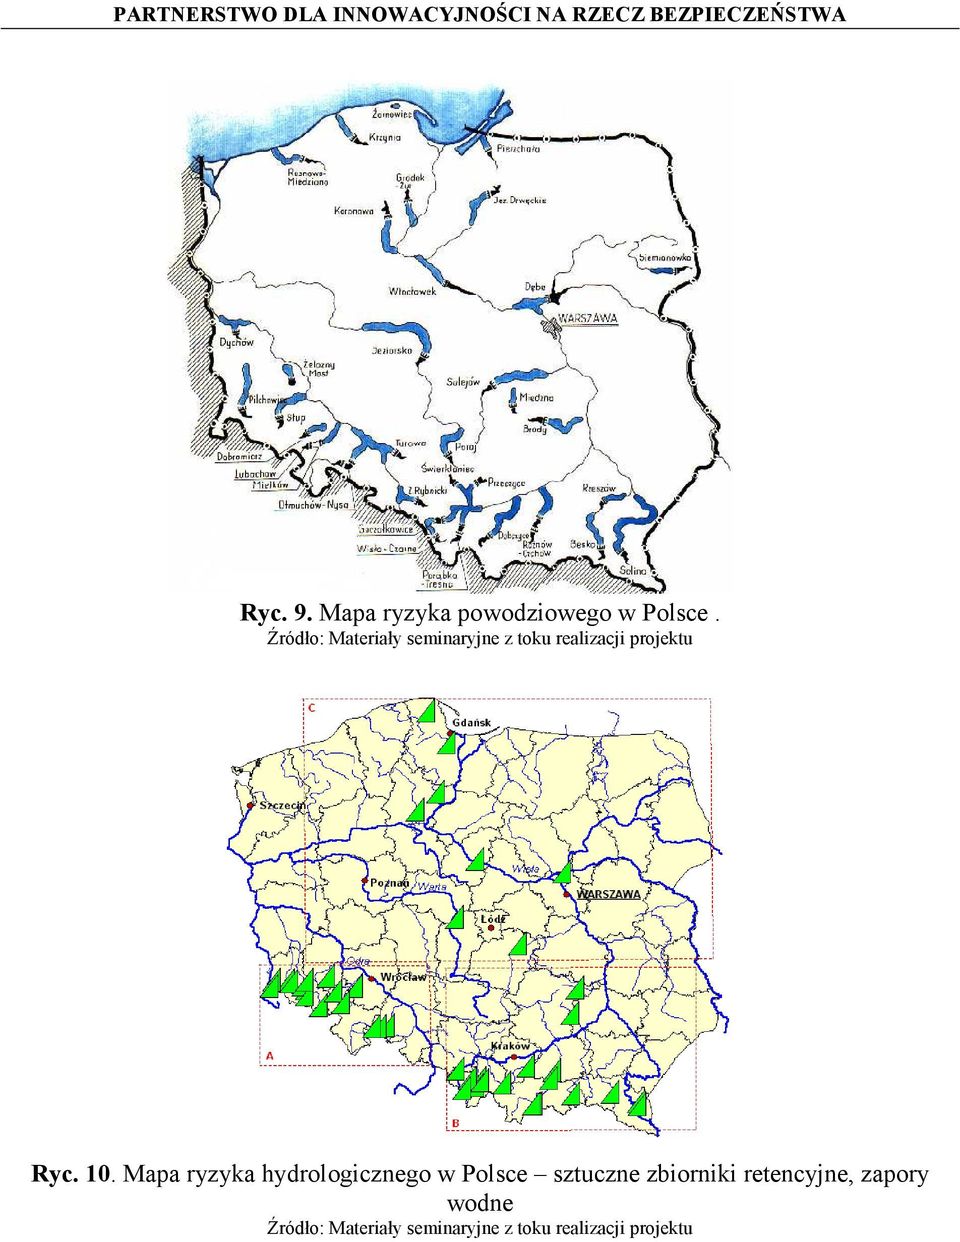 10. Mapa ryzyka hydrologicznego w Polsce sztuczne zbiorniki